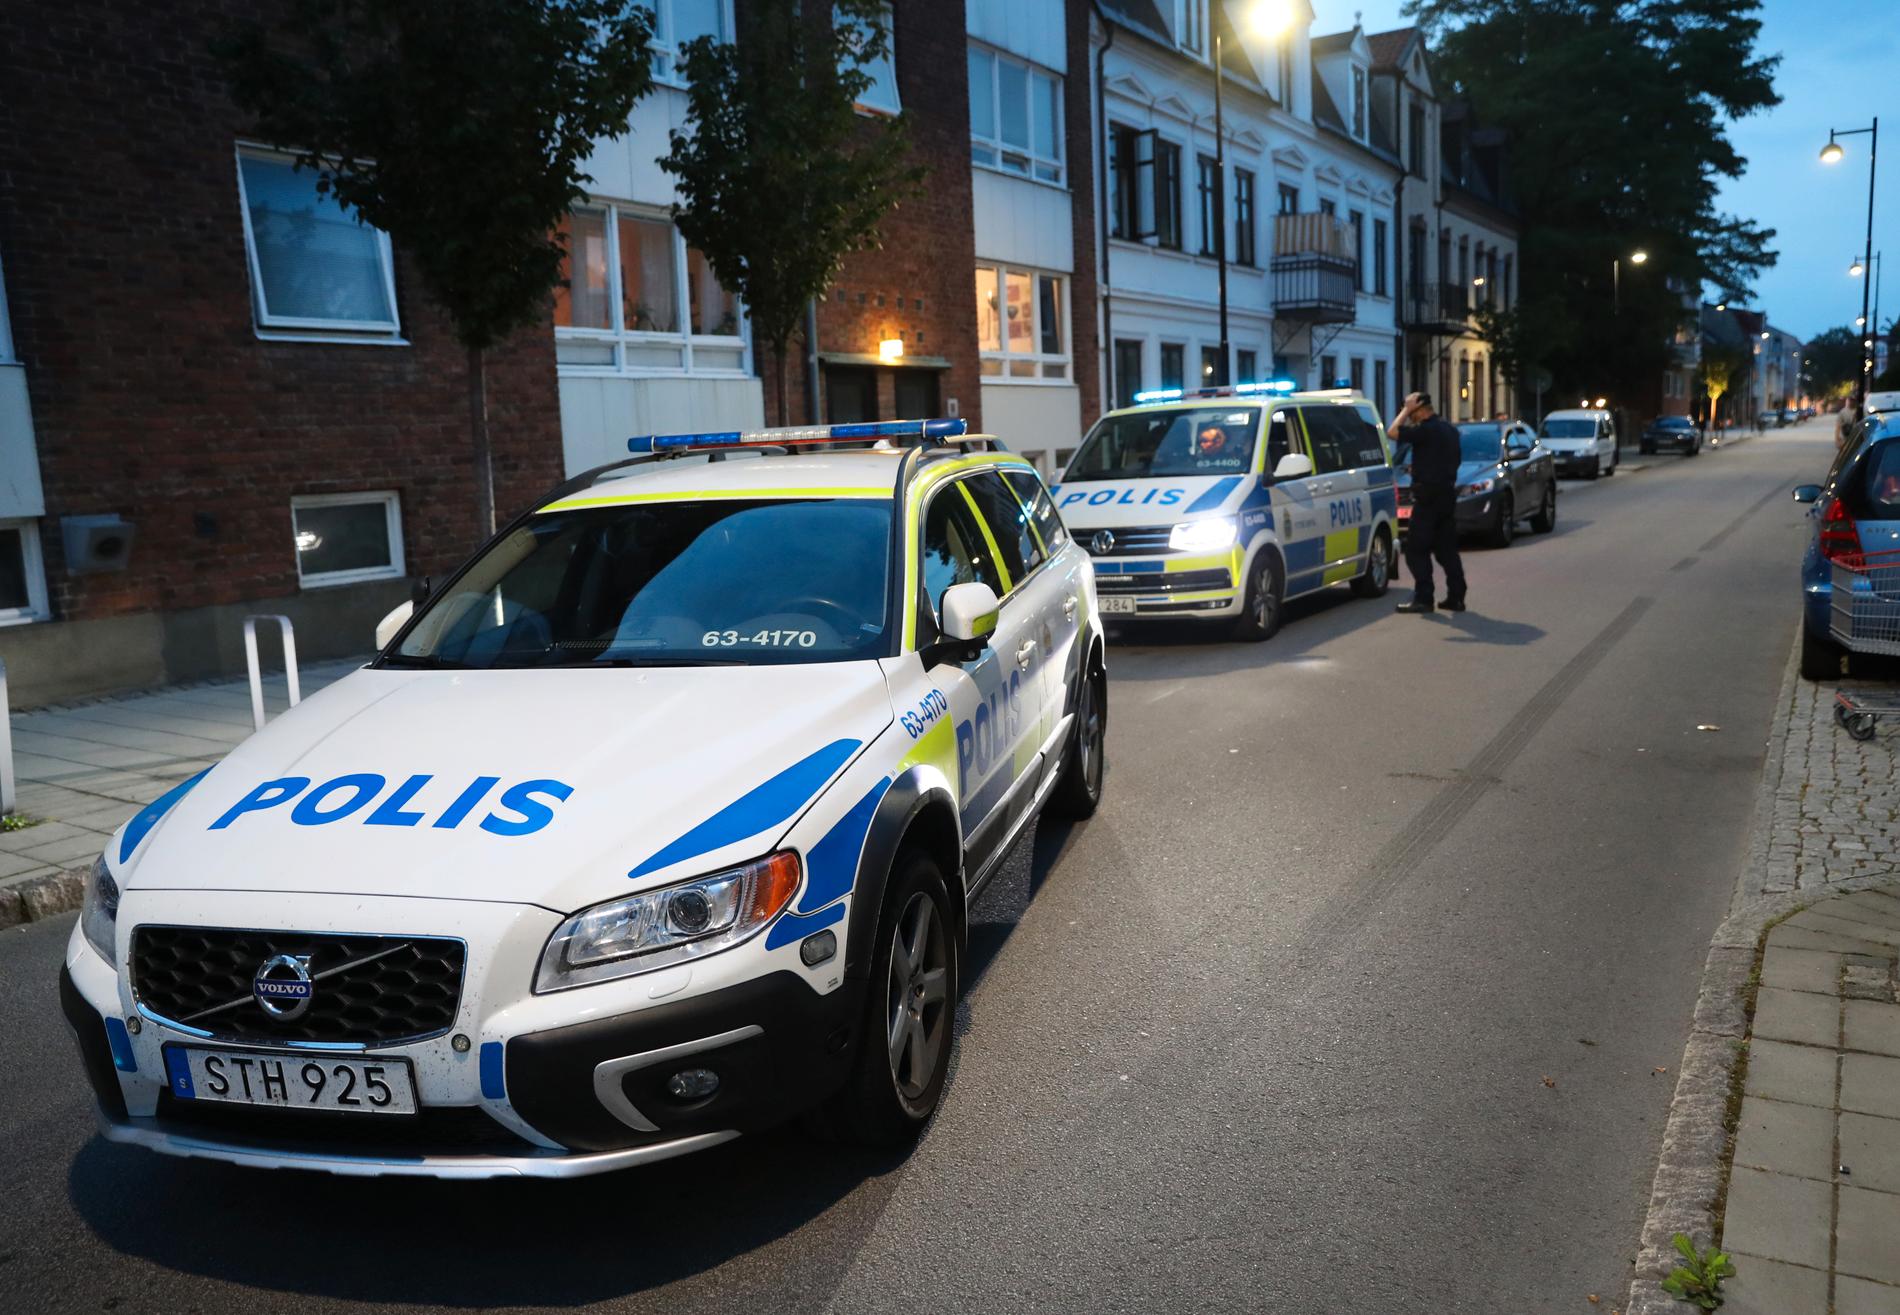 Polispatruller vid den misstänkta brottsplatsen i Landskrona, där en person skottskadades på måndagskvällen.